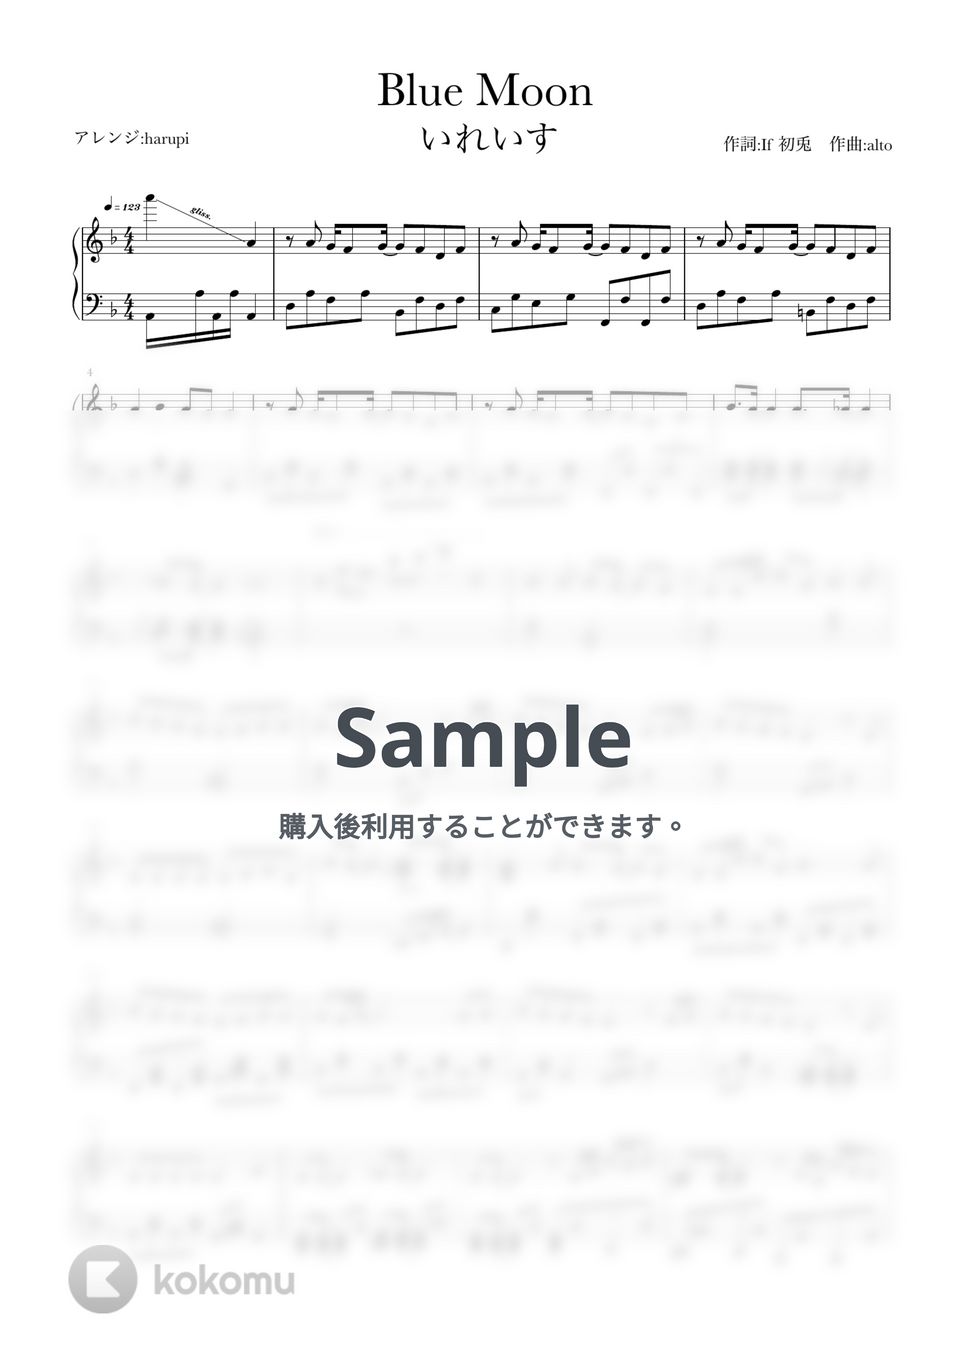 いれいす - Blue Moon (いれいす,ピアノソロ,ブルームーン,bluemoon) by harupi